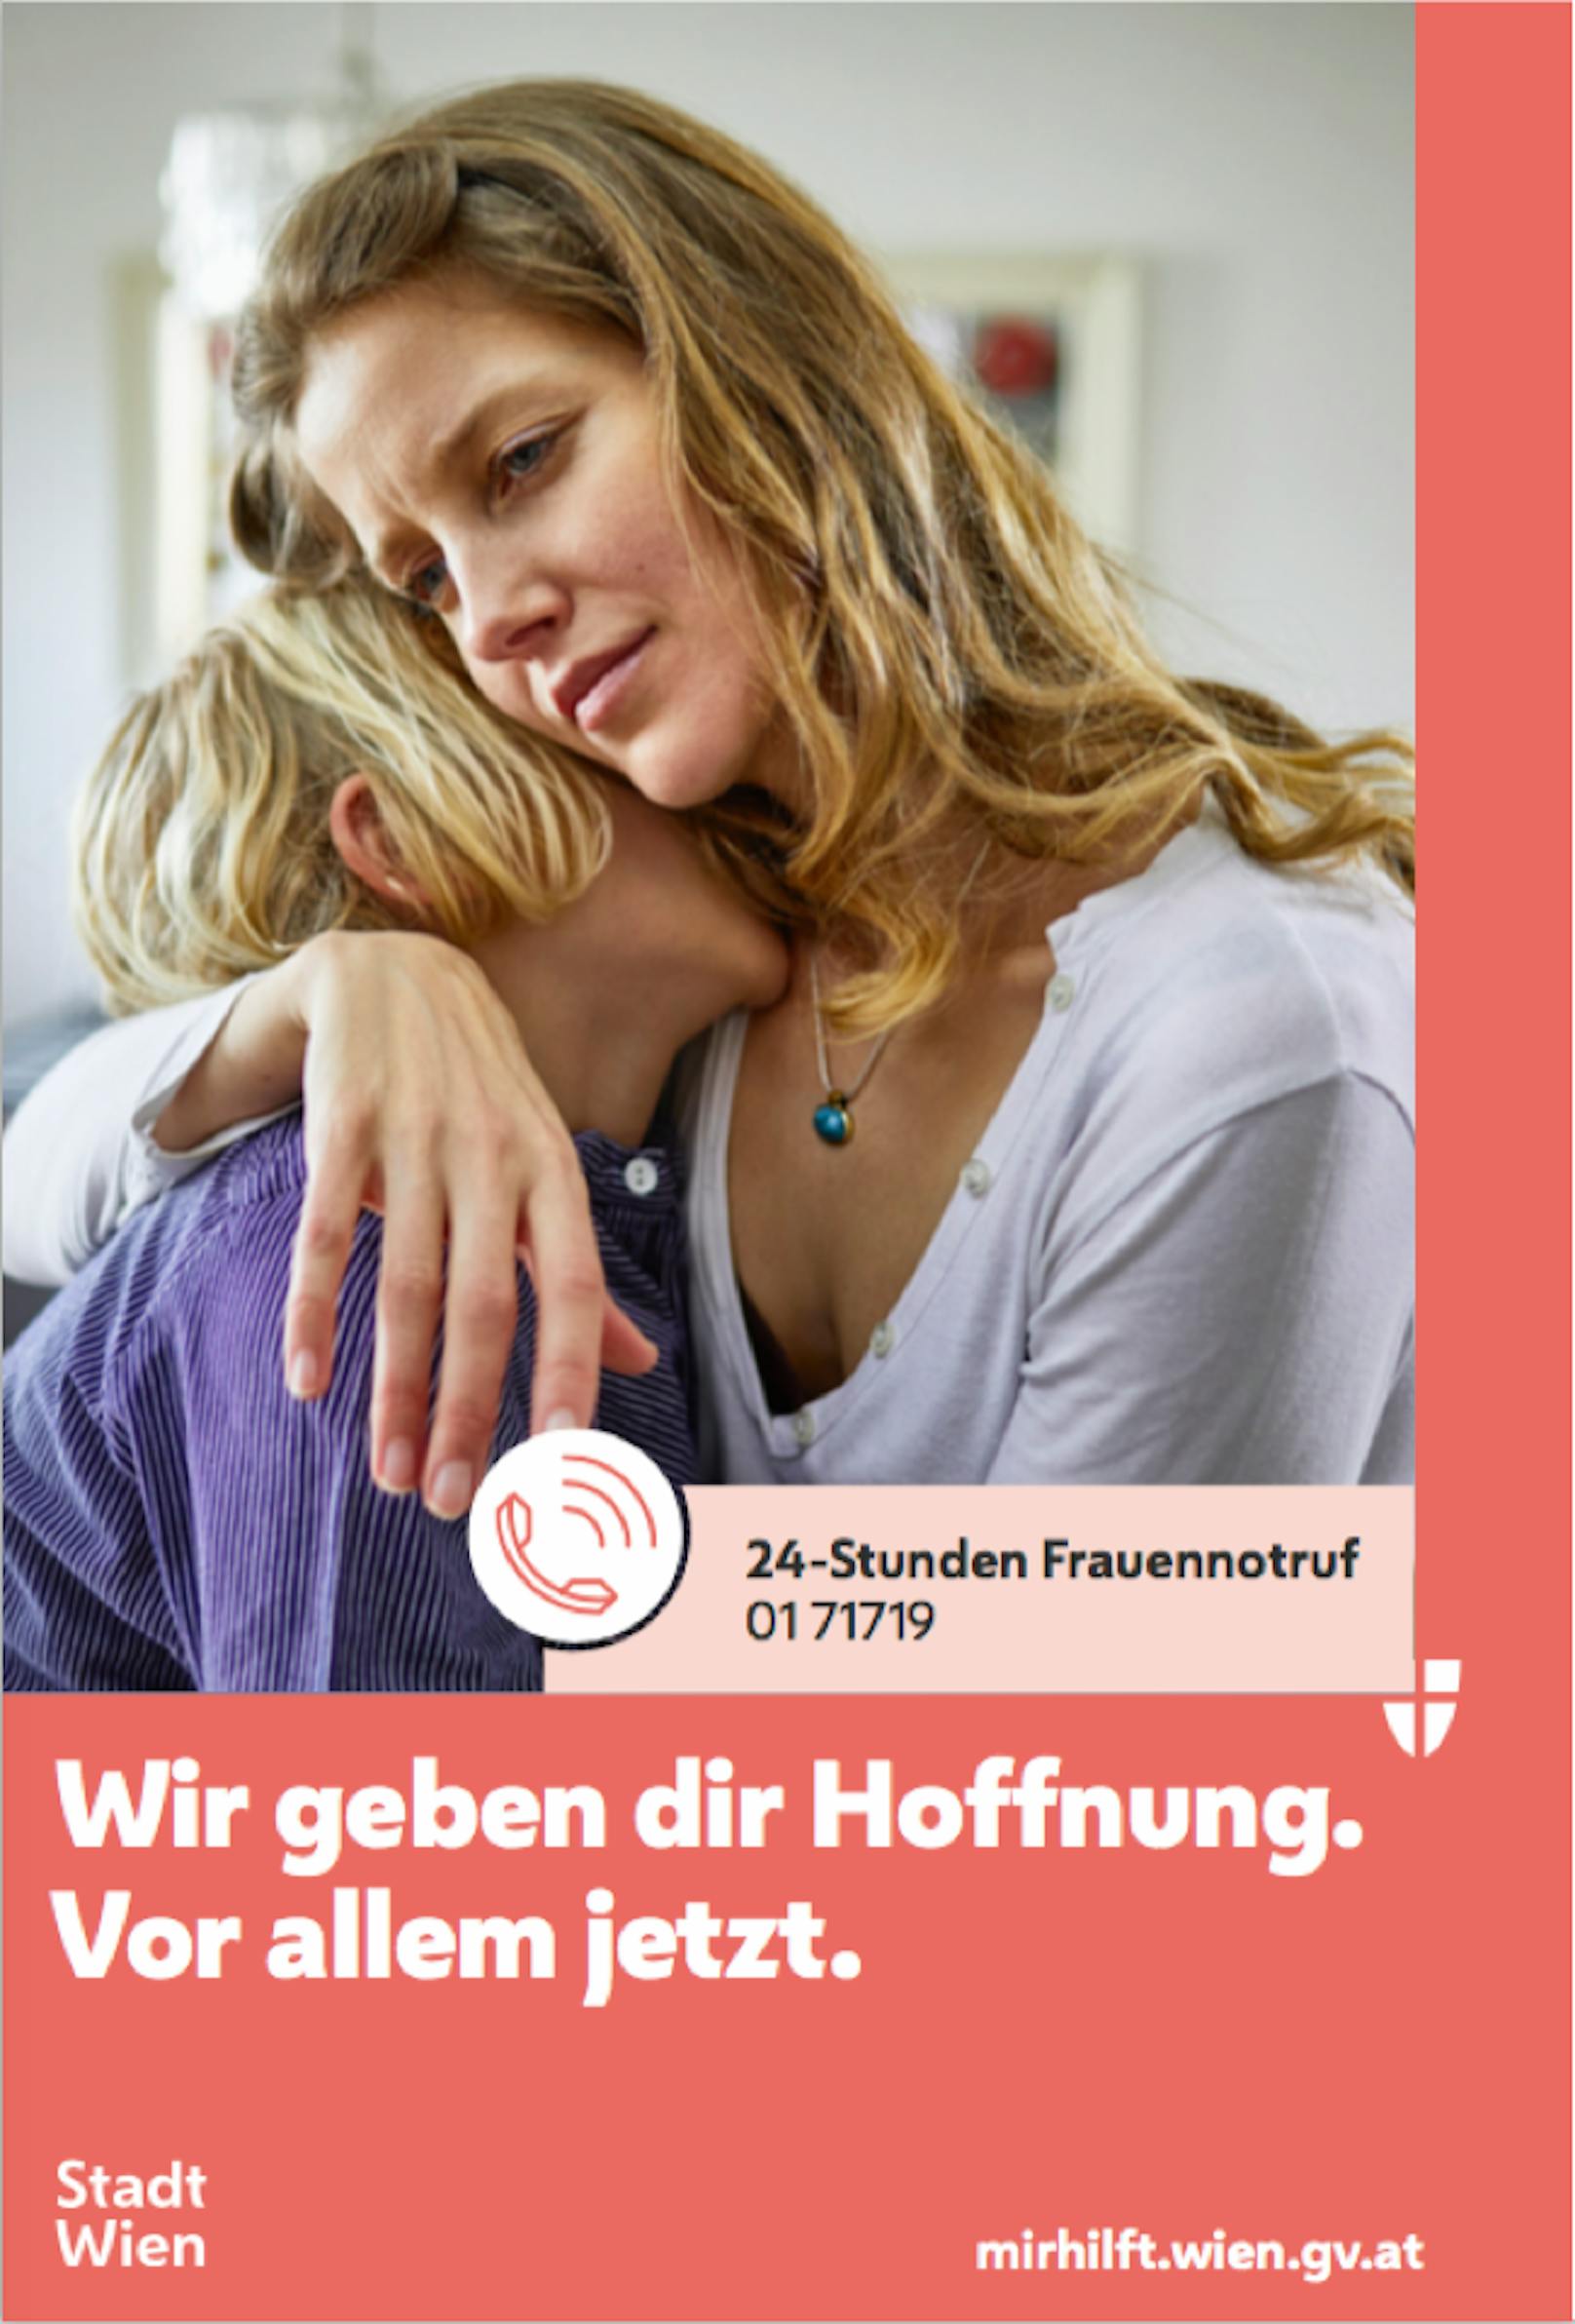 Mit dem neuen Sujet "Wir geben dir Hoffnung. Vor allem jetzt" will die Stadt Wien auf den 24 Stunden-Frauennotruf aufmerksam machen.